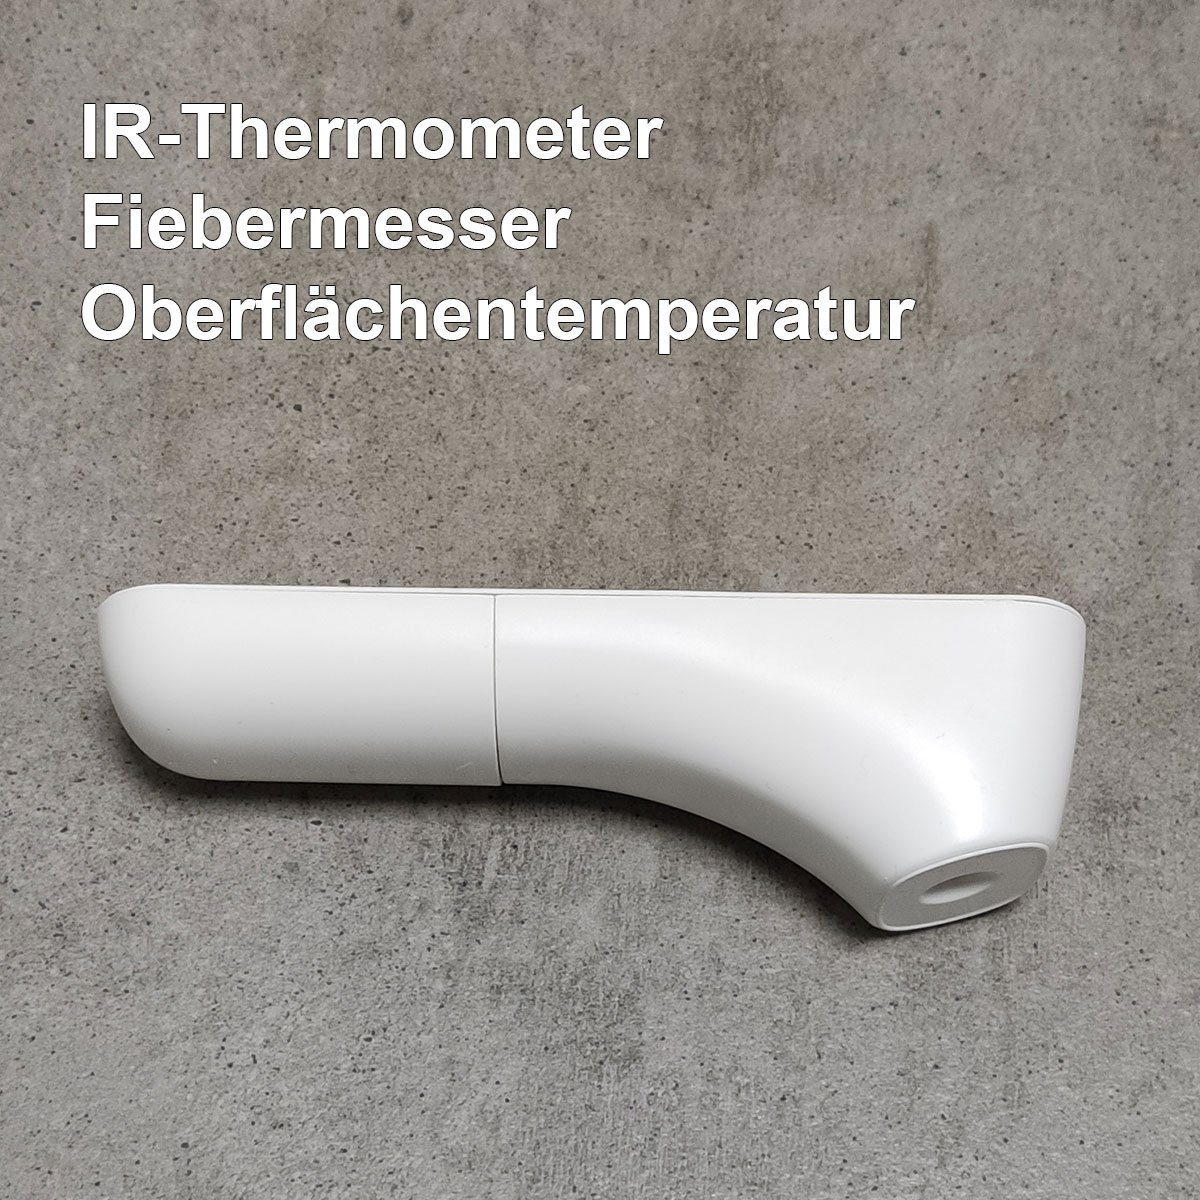 1-tlg., Für Forca Fieberthermometer geeignet Infrarot-Fieberthermometer Temperaturmessung alle Infrarot, Thermometer Altersgruppen IR